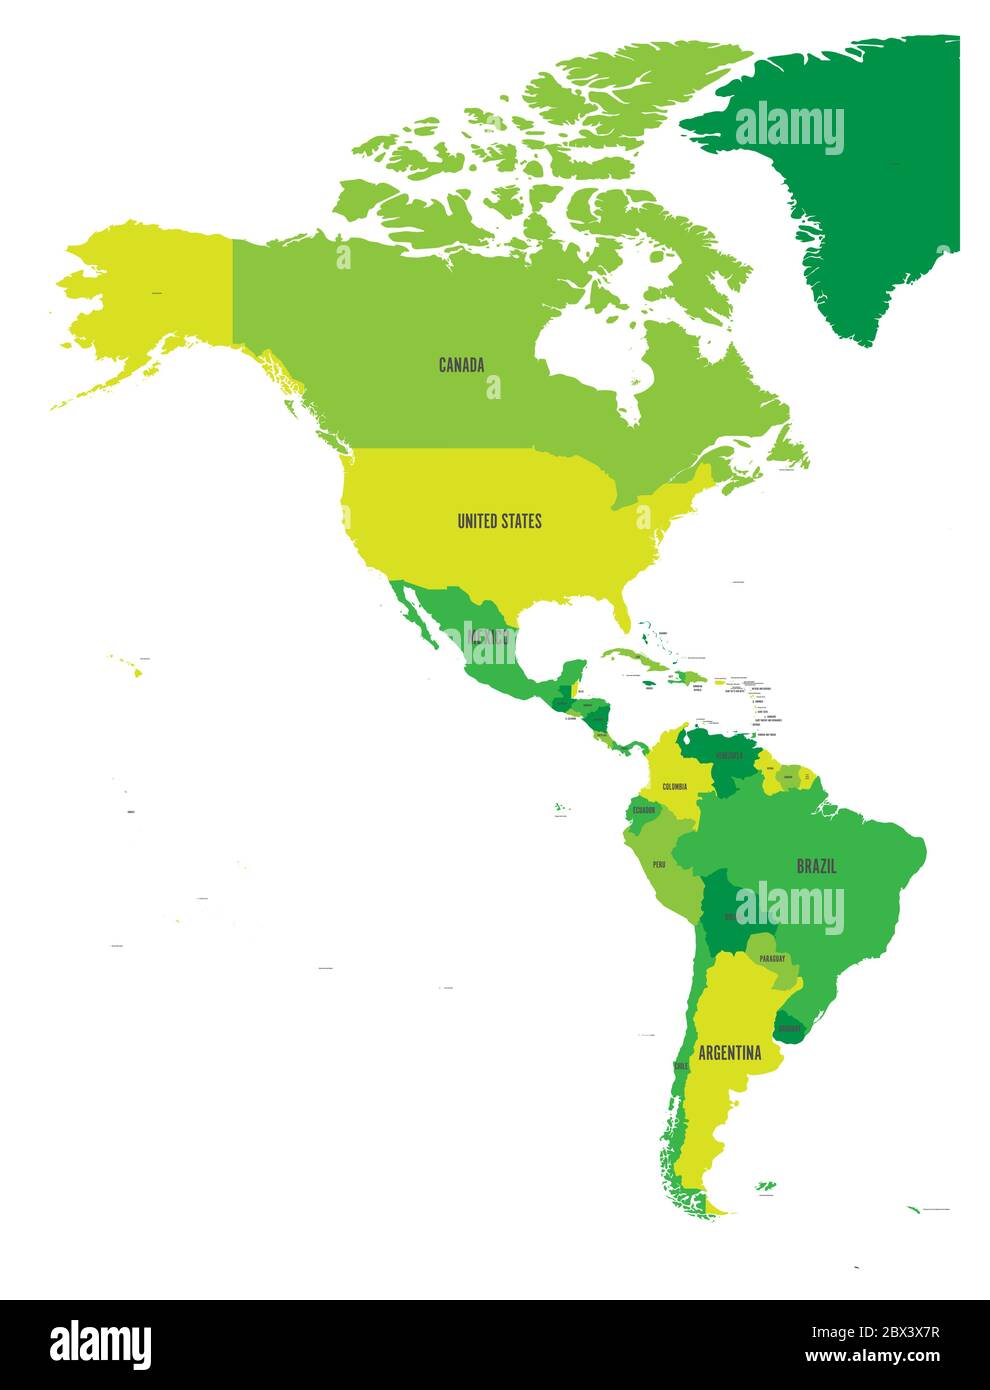 Politische Karte von Amerika in vier Grüntönen auf weißem Hintergrund. Nord- und Südamerika mit Länderkennzeichnungen. Einfache flache Vektorgrafik. Stock Vektor